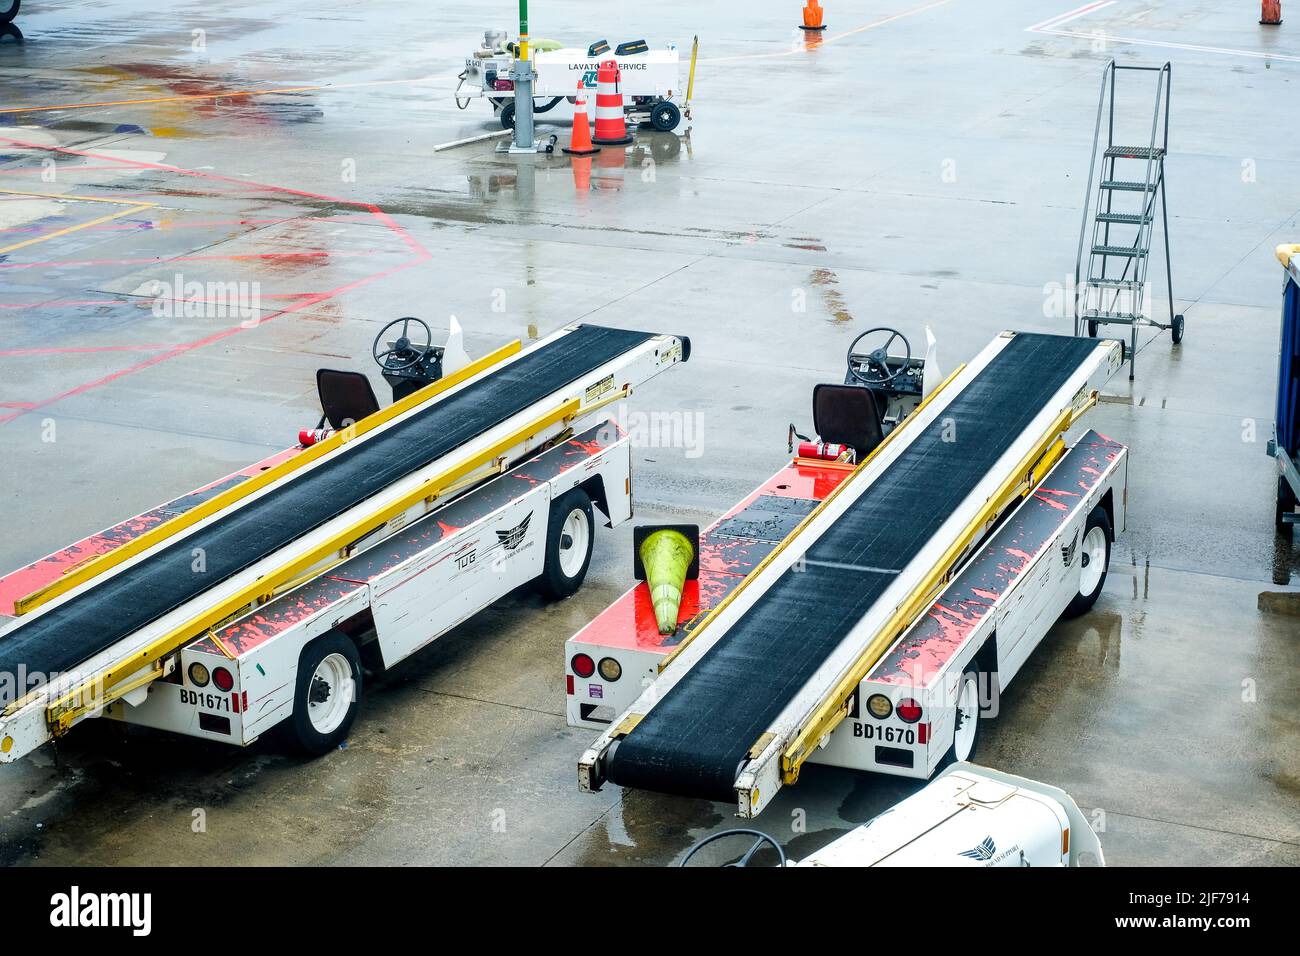 Las cancelaciones de vuelos estresan a los viajeros cansados. Los transportadores de equipaje en asfalto están vacíos. Foto de stock